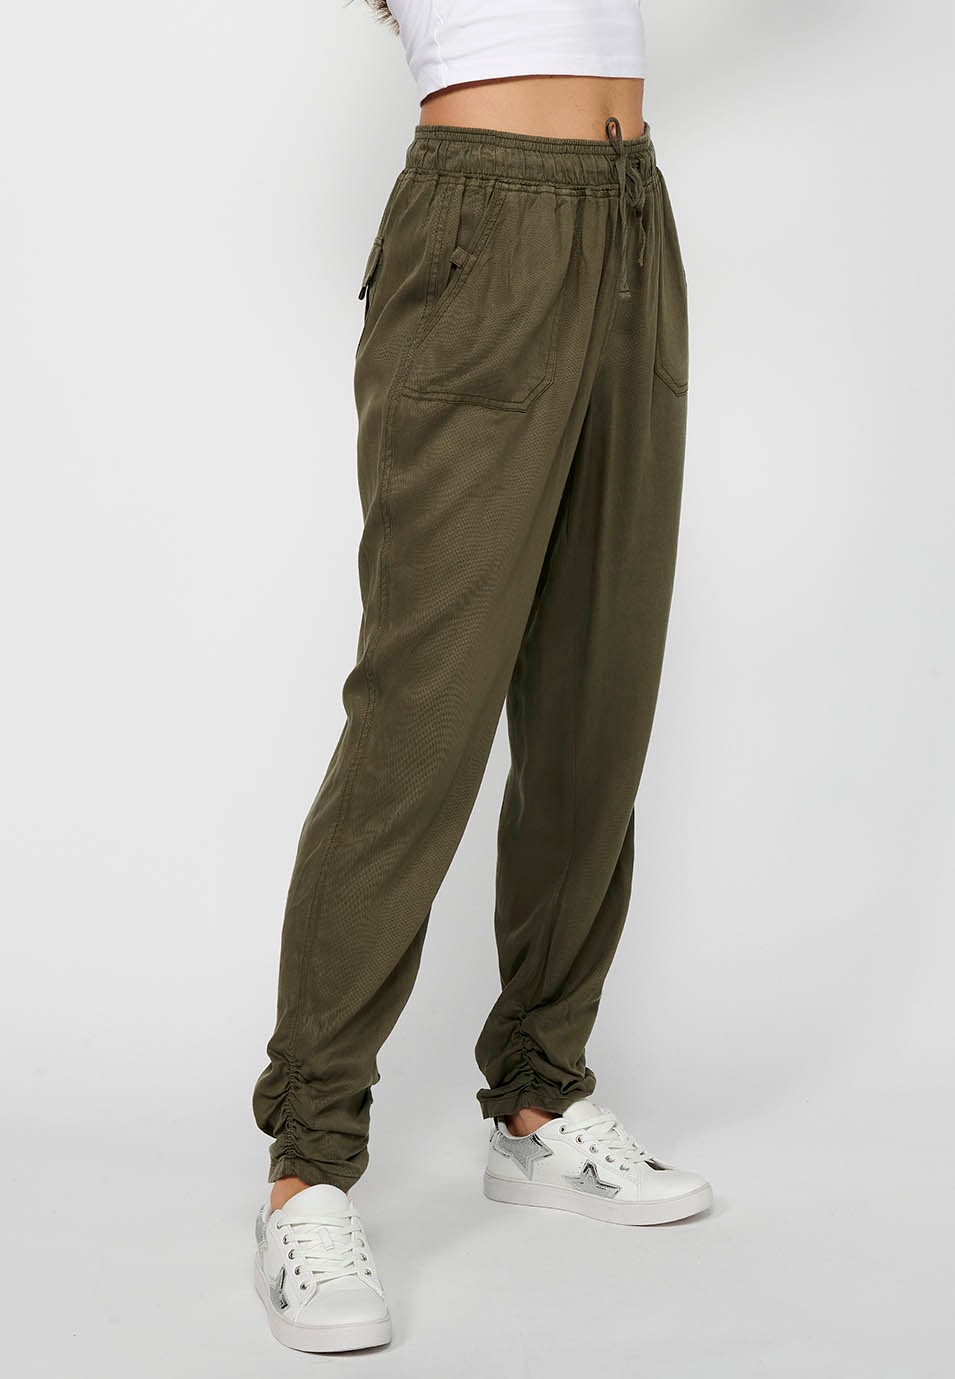 Lange Jogginghose mit gewelltem Finish und gummiertem Bund mit vier Taschen, zwei Gesäßtaschen mit Klappe in der Farbe Khaki für Damen 3